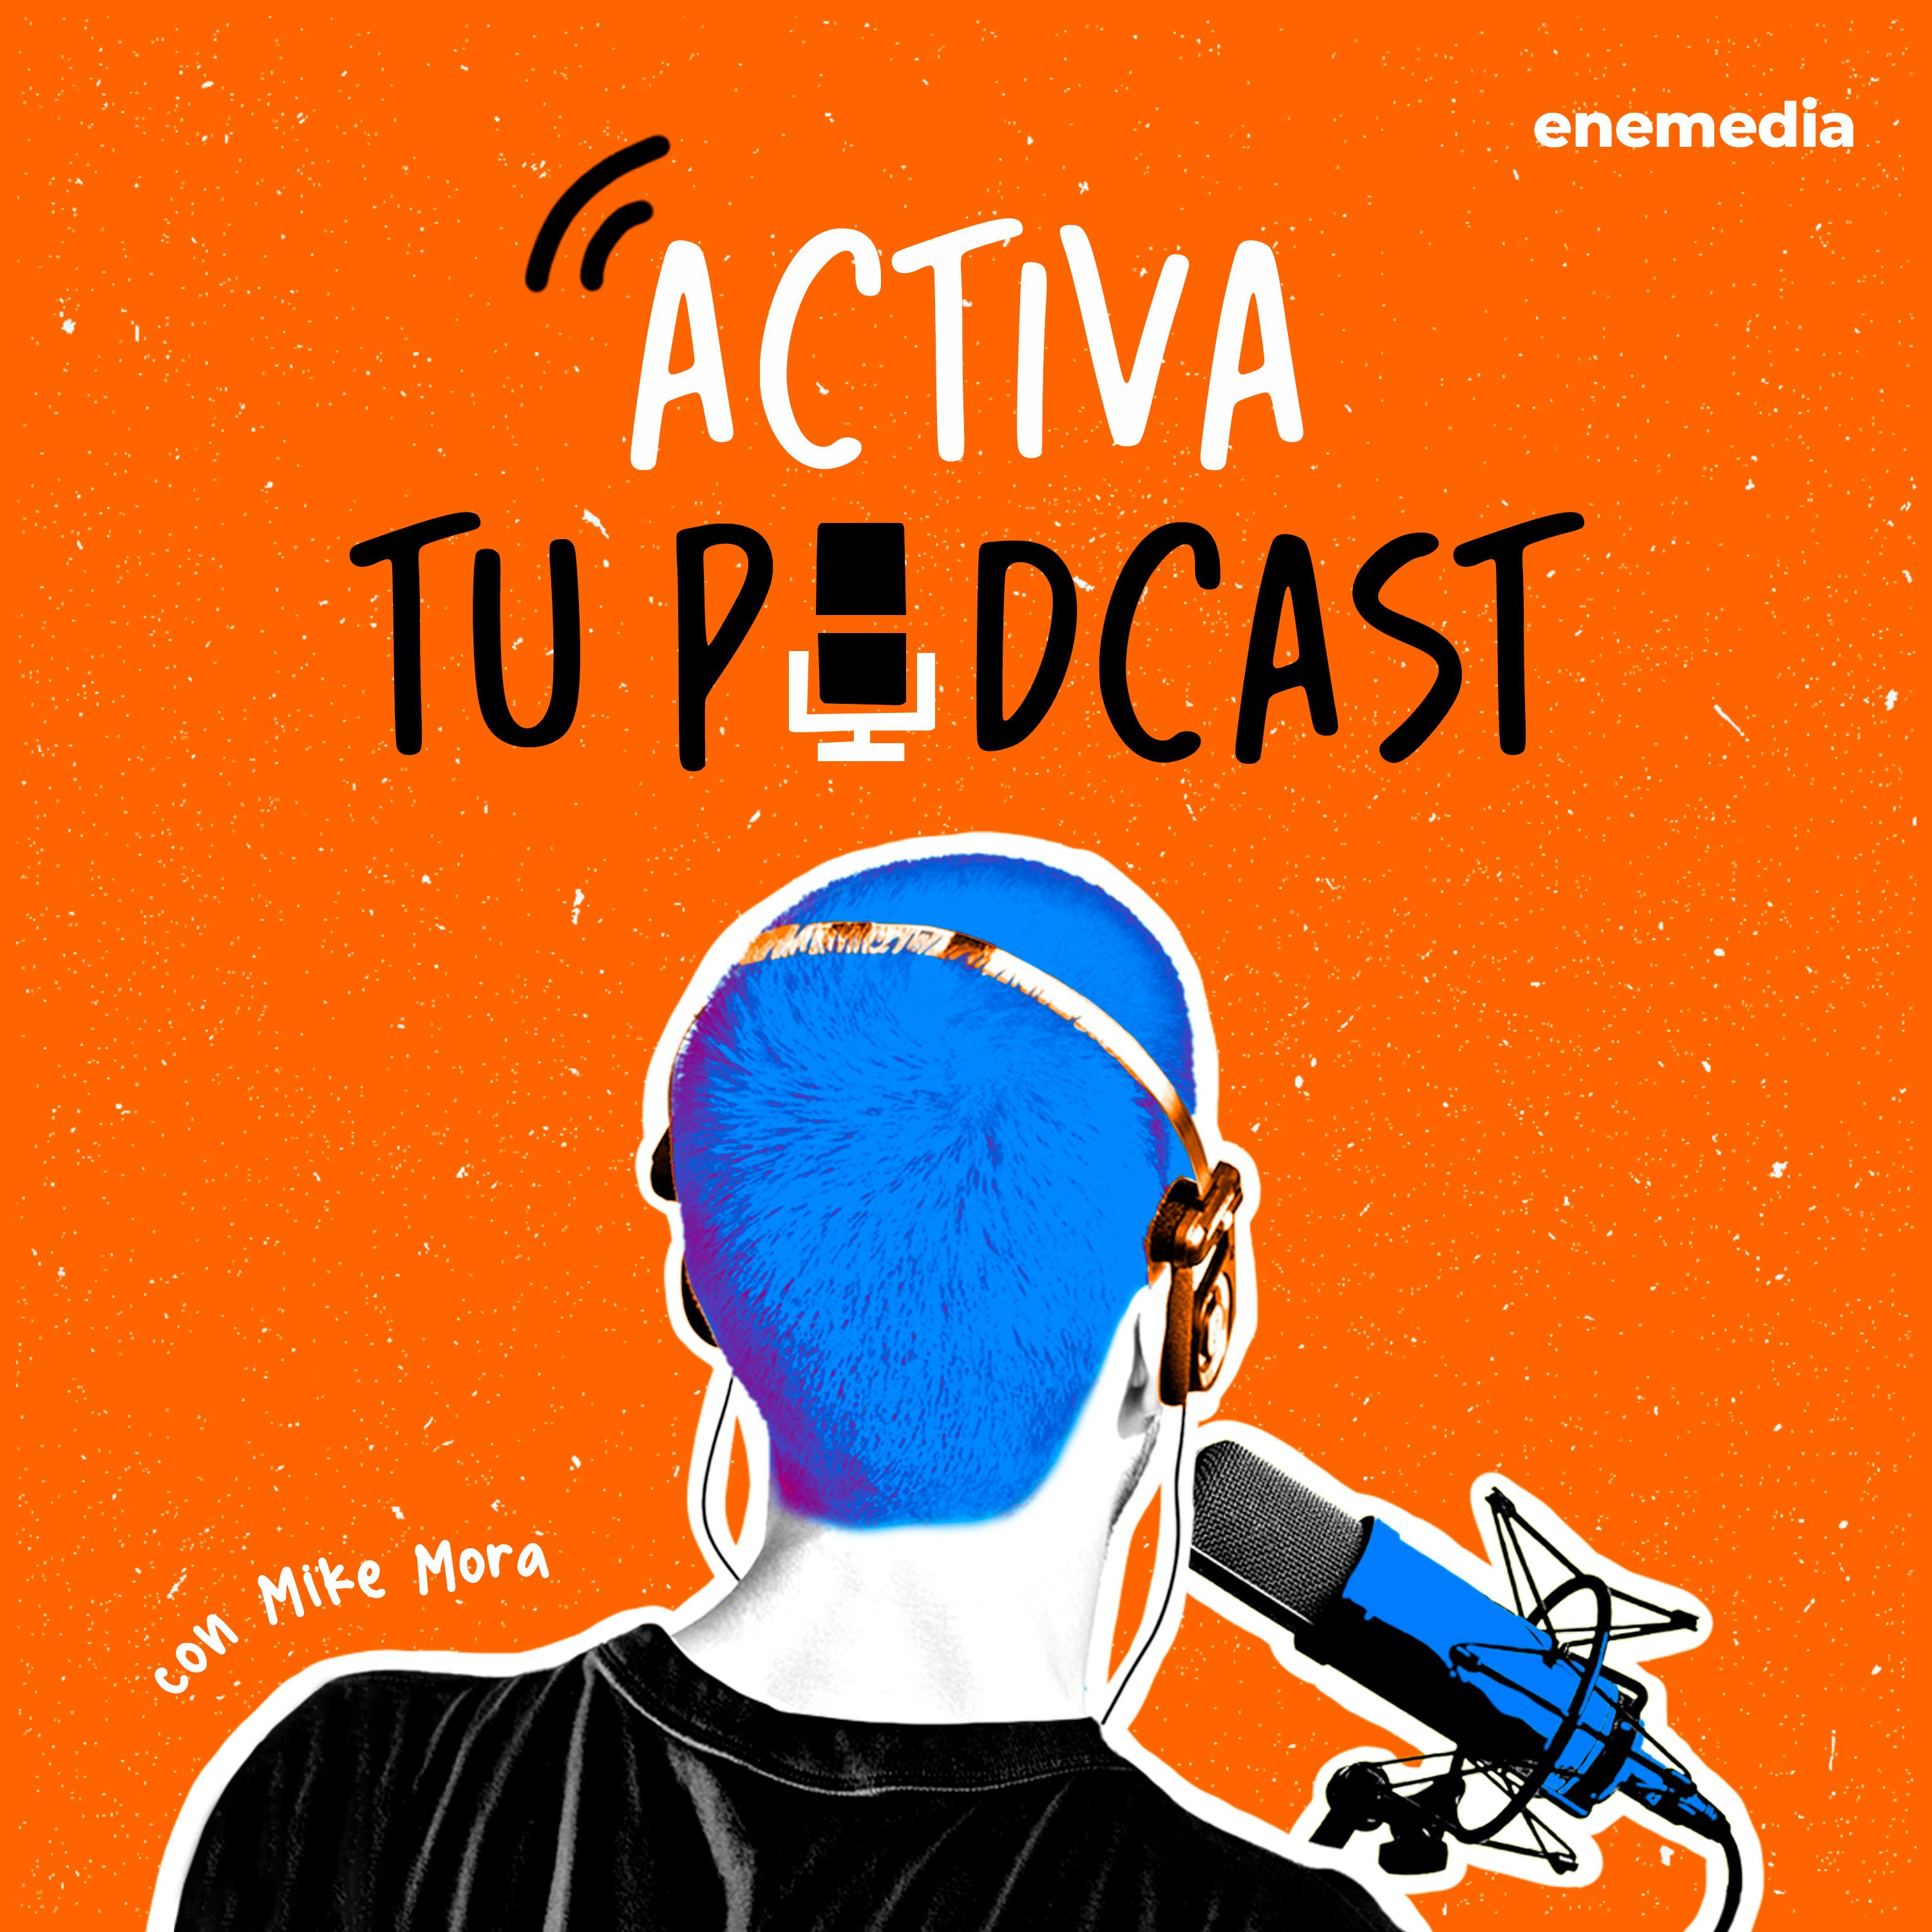 Ep. 30 Podcast management: Retos, experiencias y recomendaciones